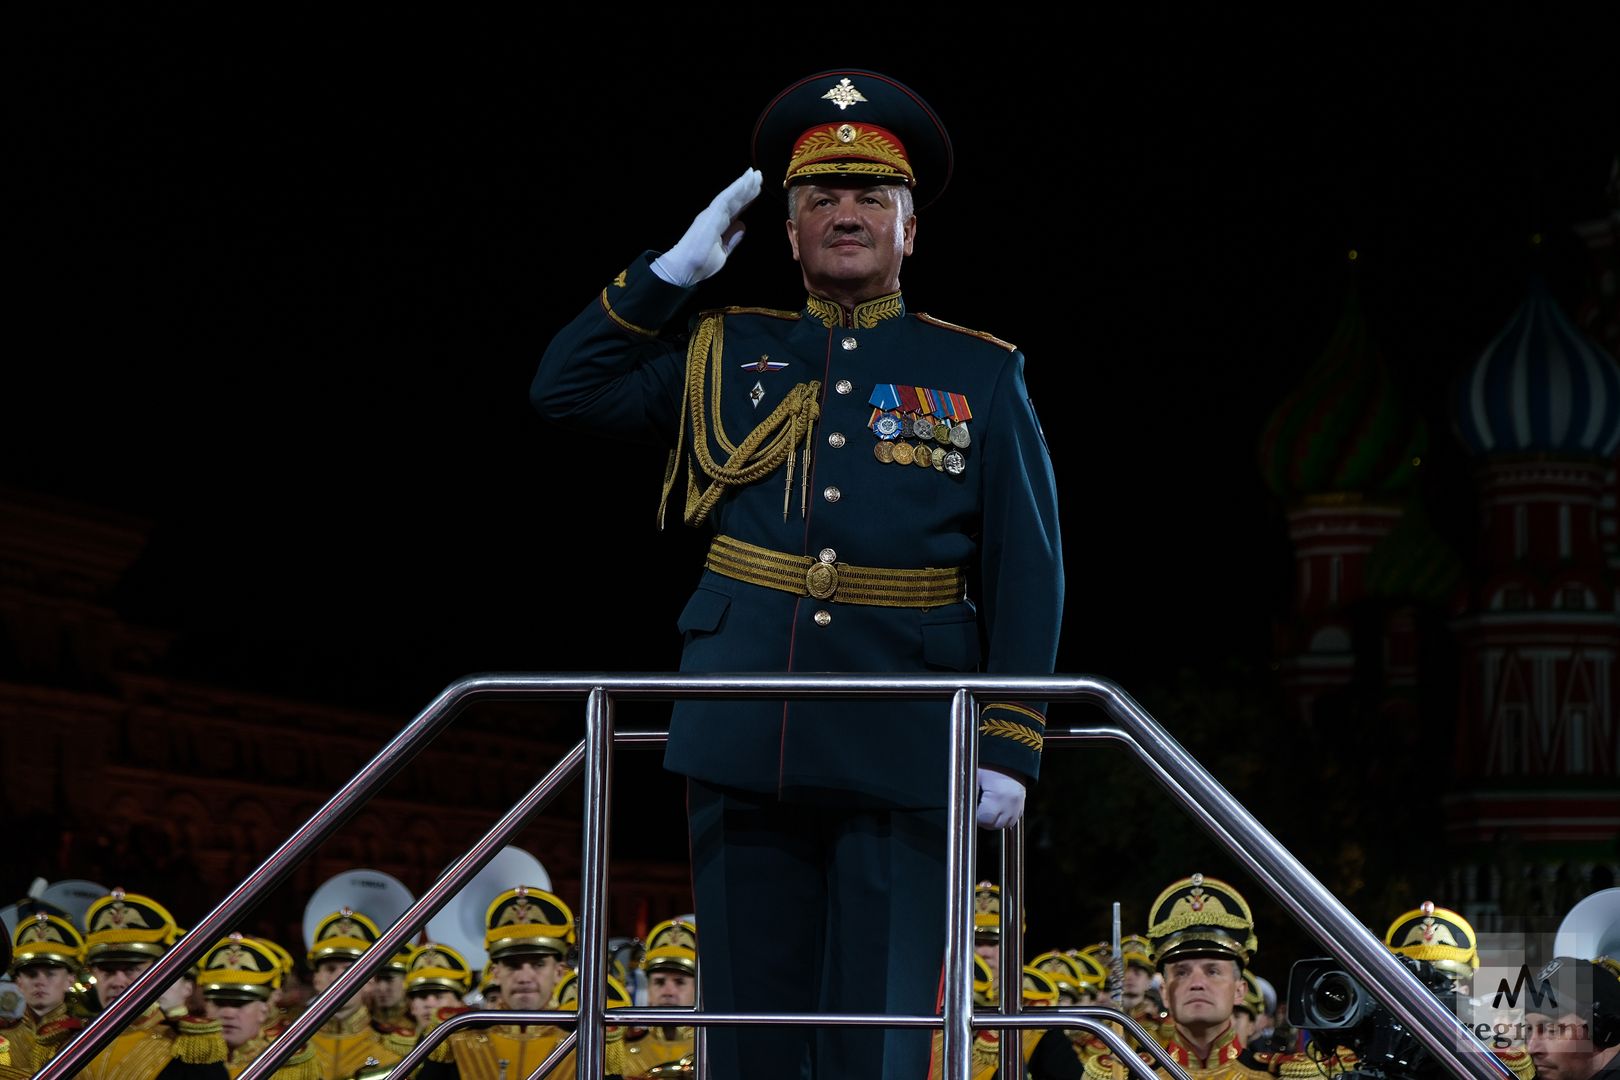 Тимофей Маякин, главный военный дирижер ВС России, генерал-майор, музыкальный руководитель фестиваля